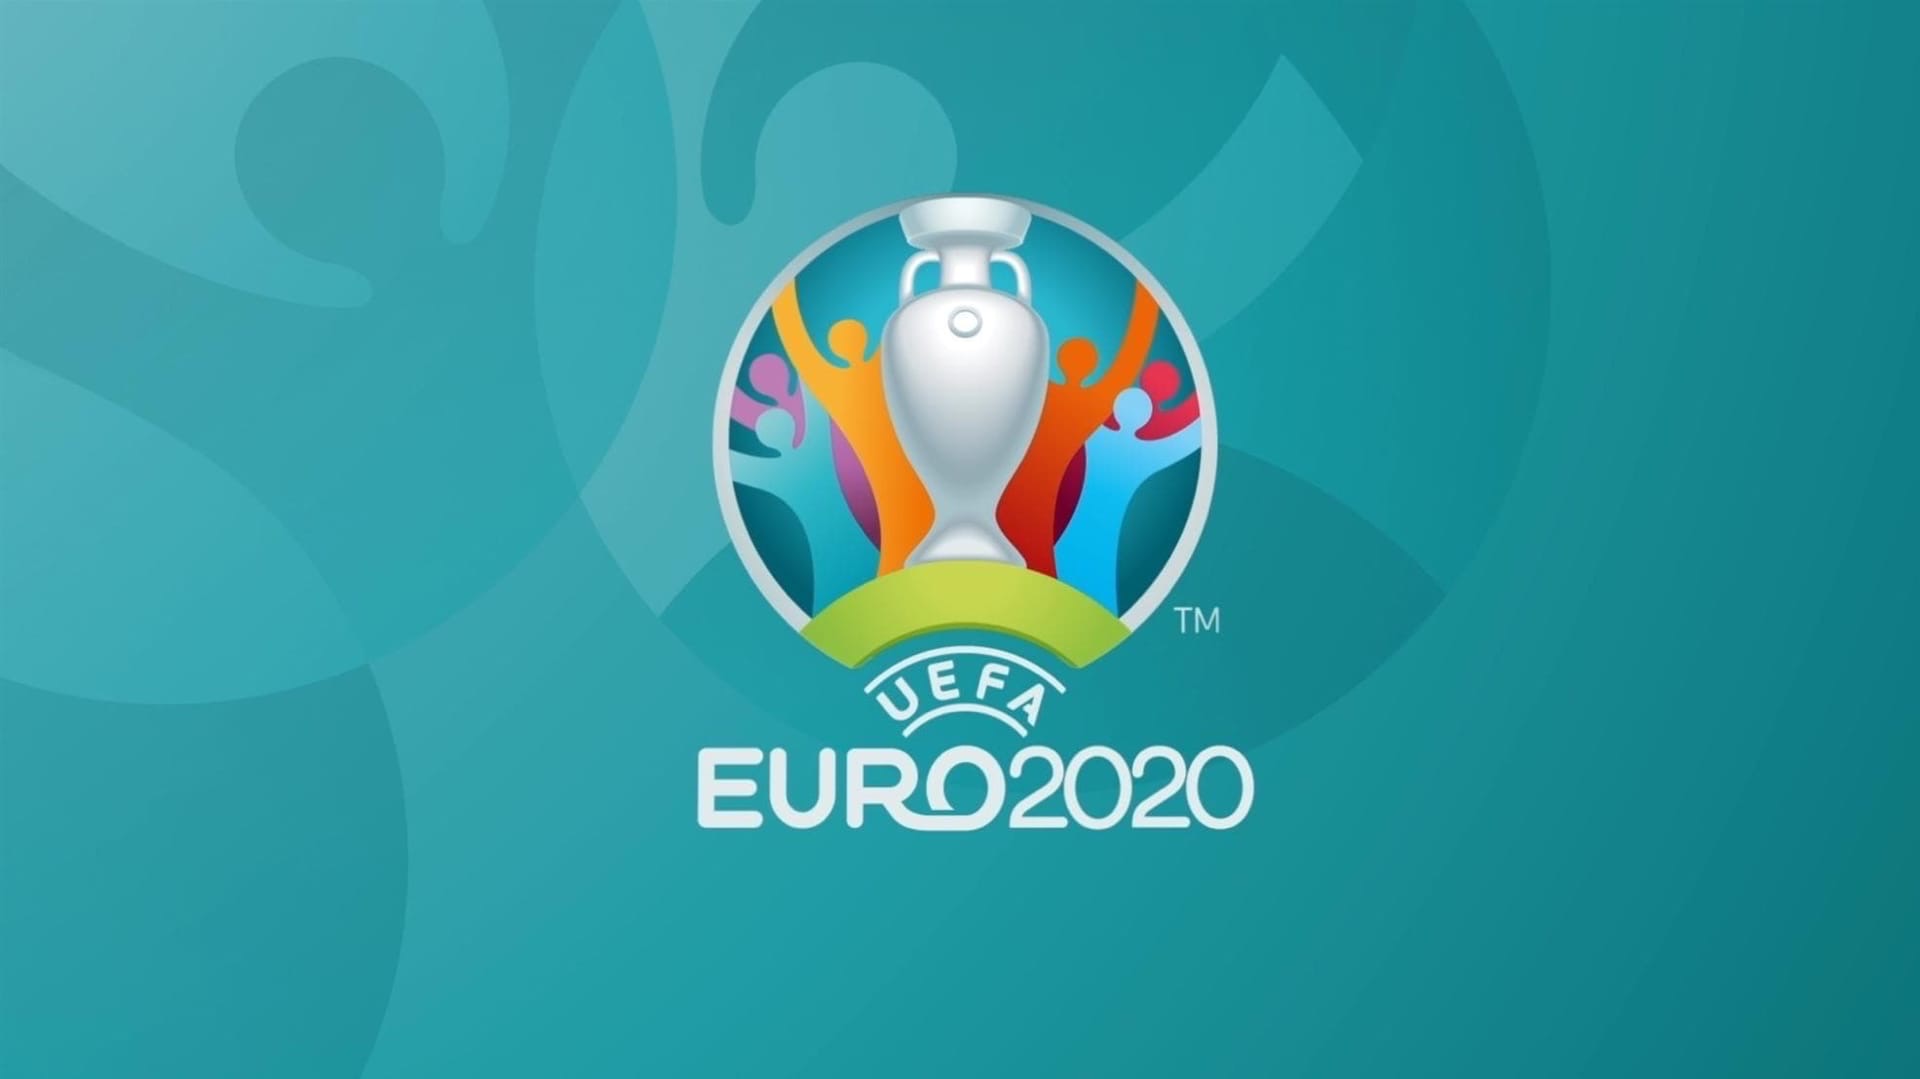 Евро-2020: кто обогатится на футбольном событии?